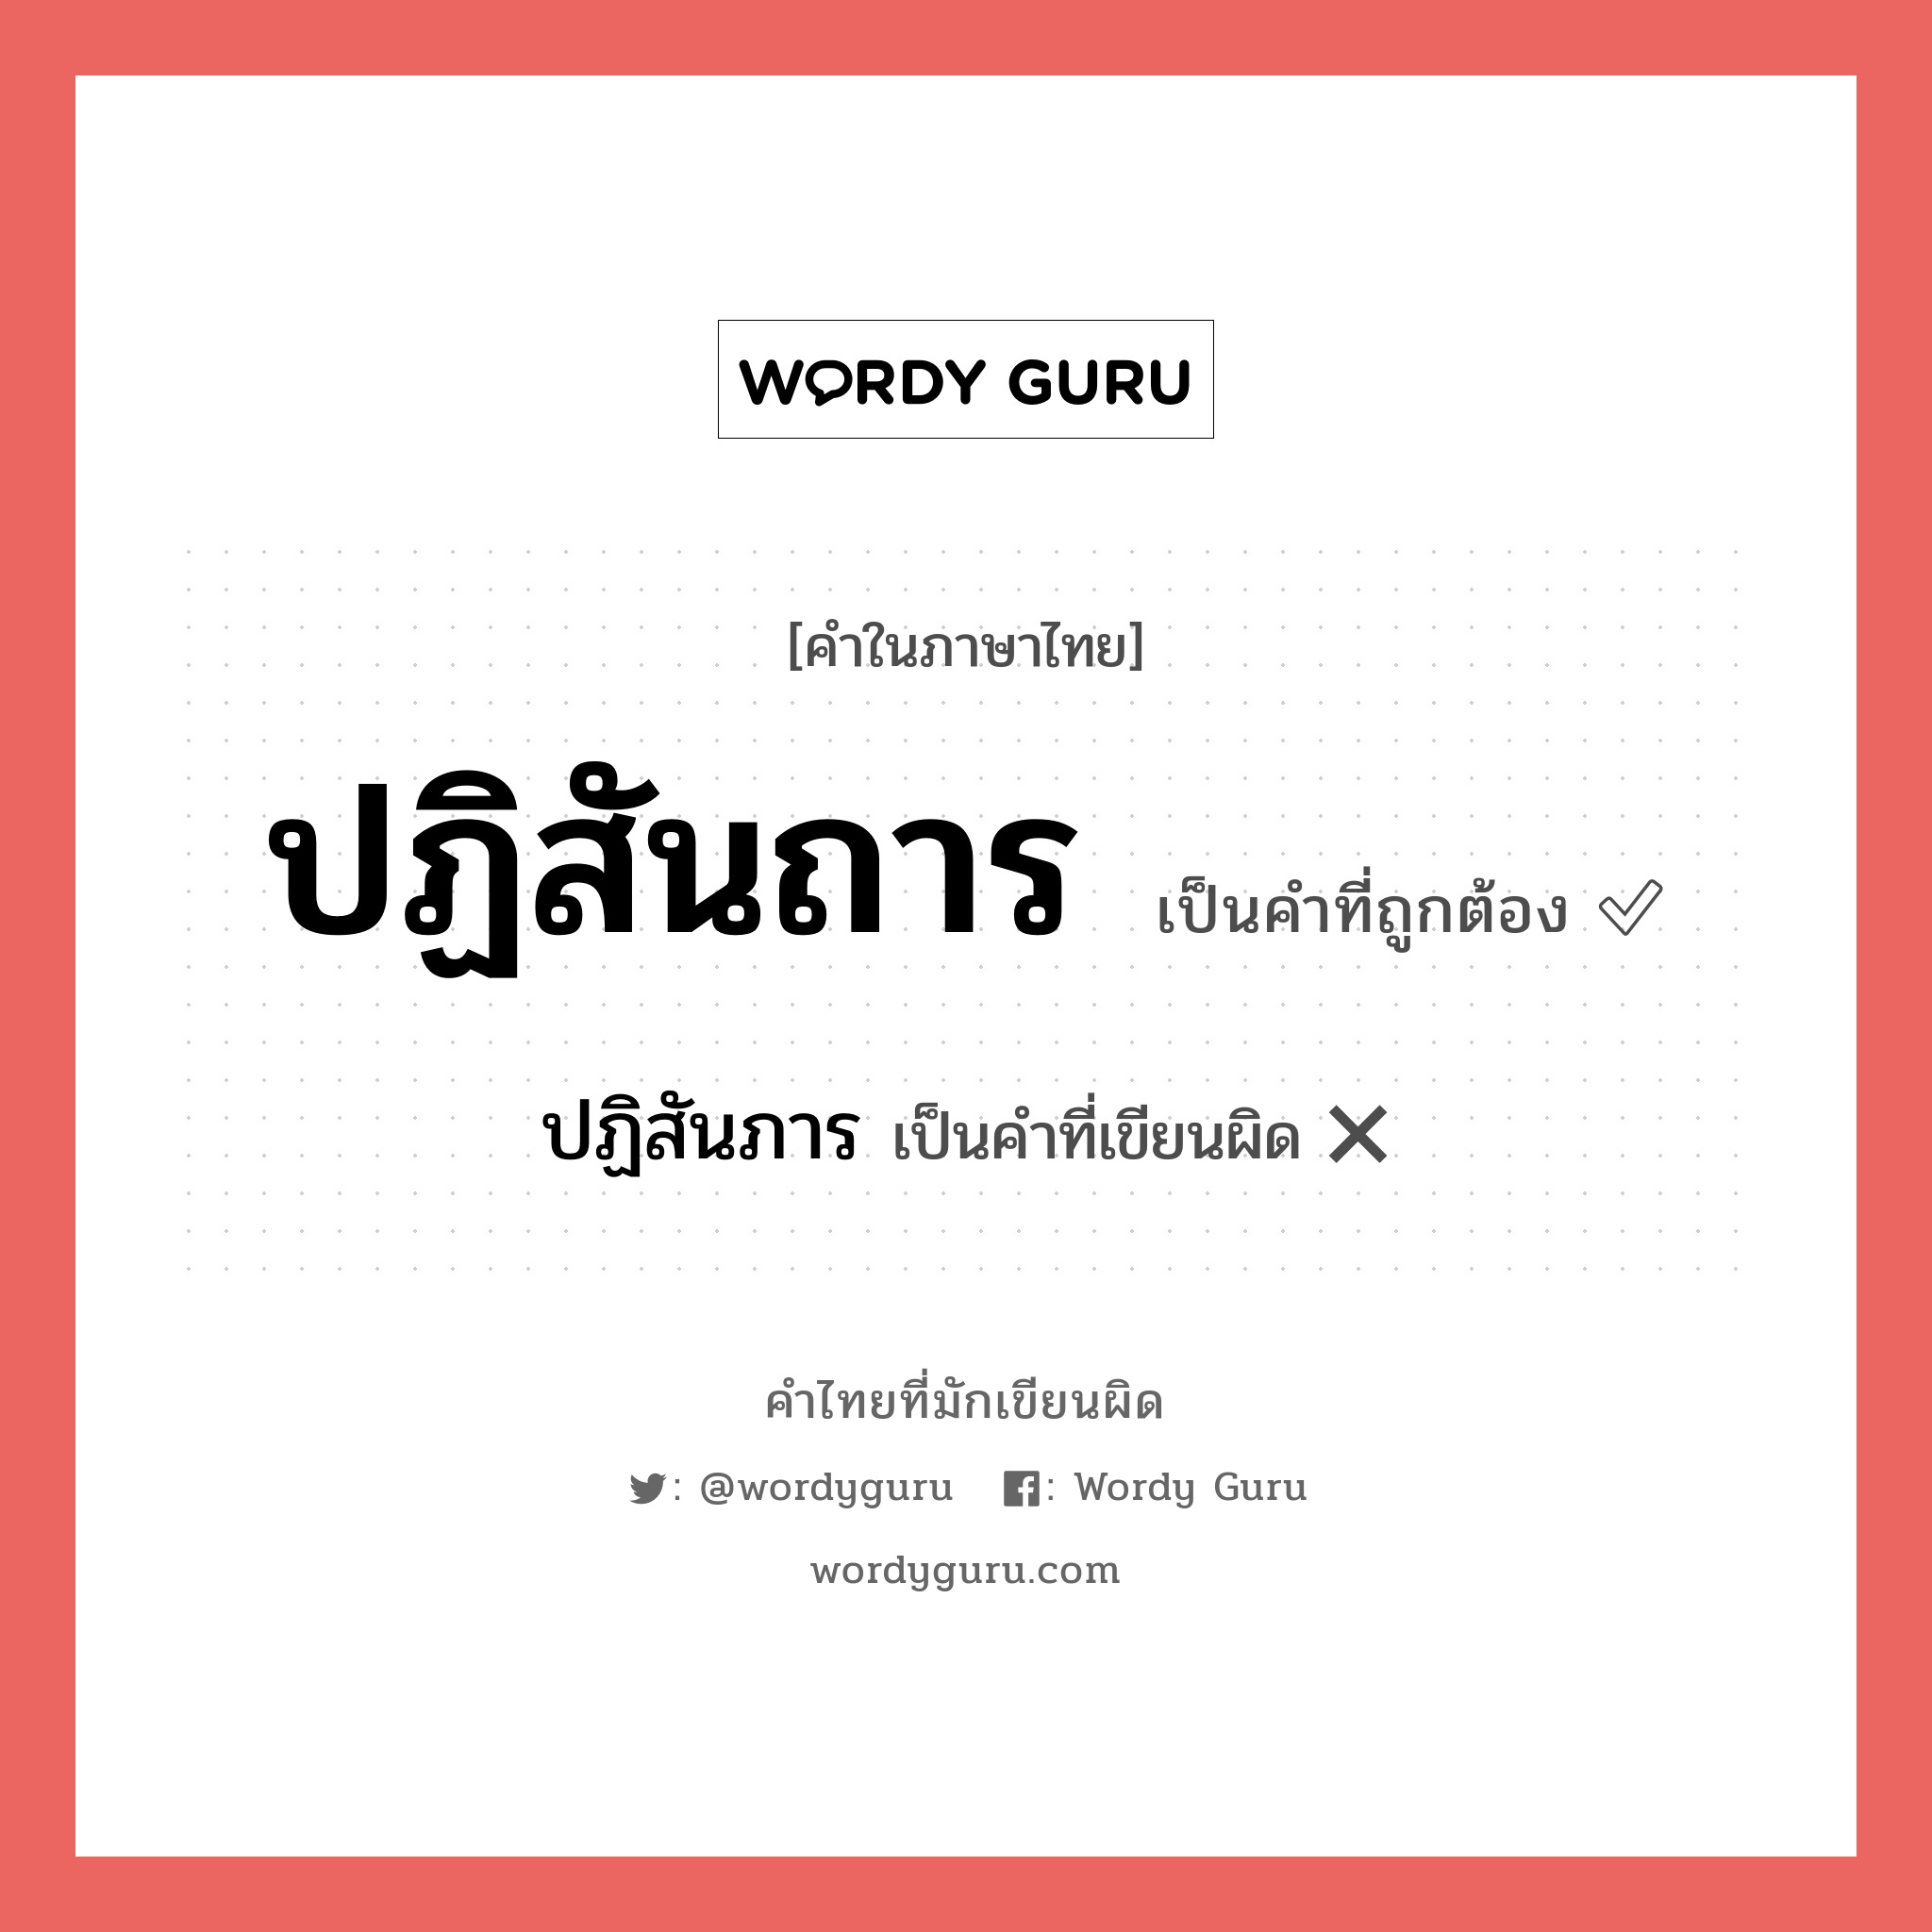 ปฏิสันภาร หรือ ปฏิสันถาร คำไหนเขียนถูก?, คำในภาษาไทยที่มักเขียนผิด ปฏิสันภาร คำที่ผิด ❌ ปฏิสันถาร